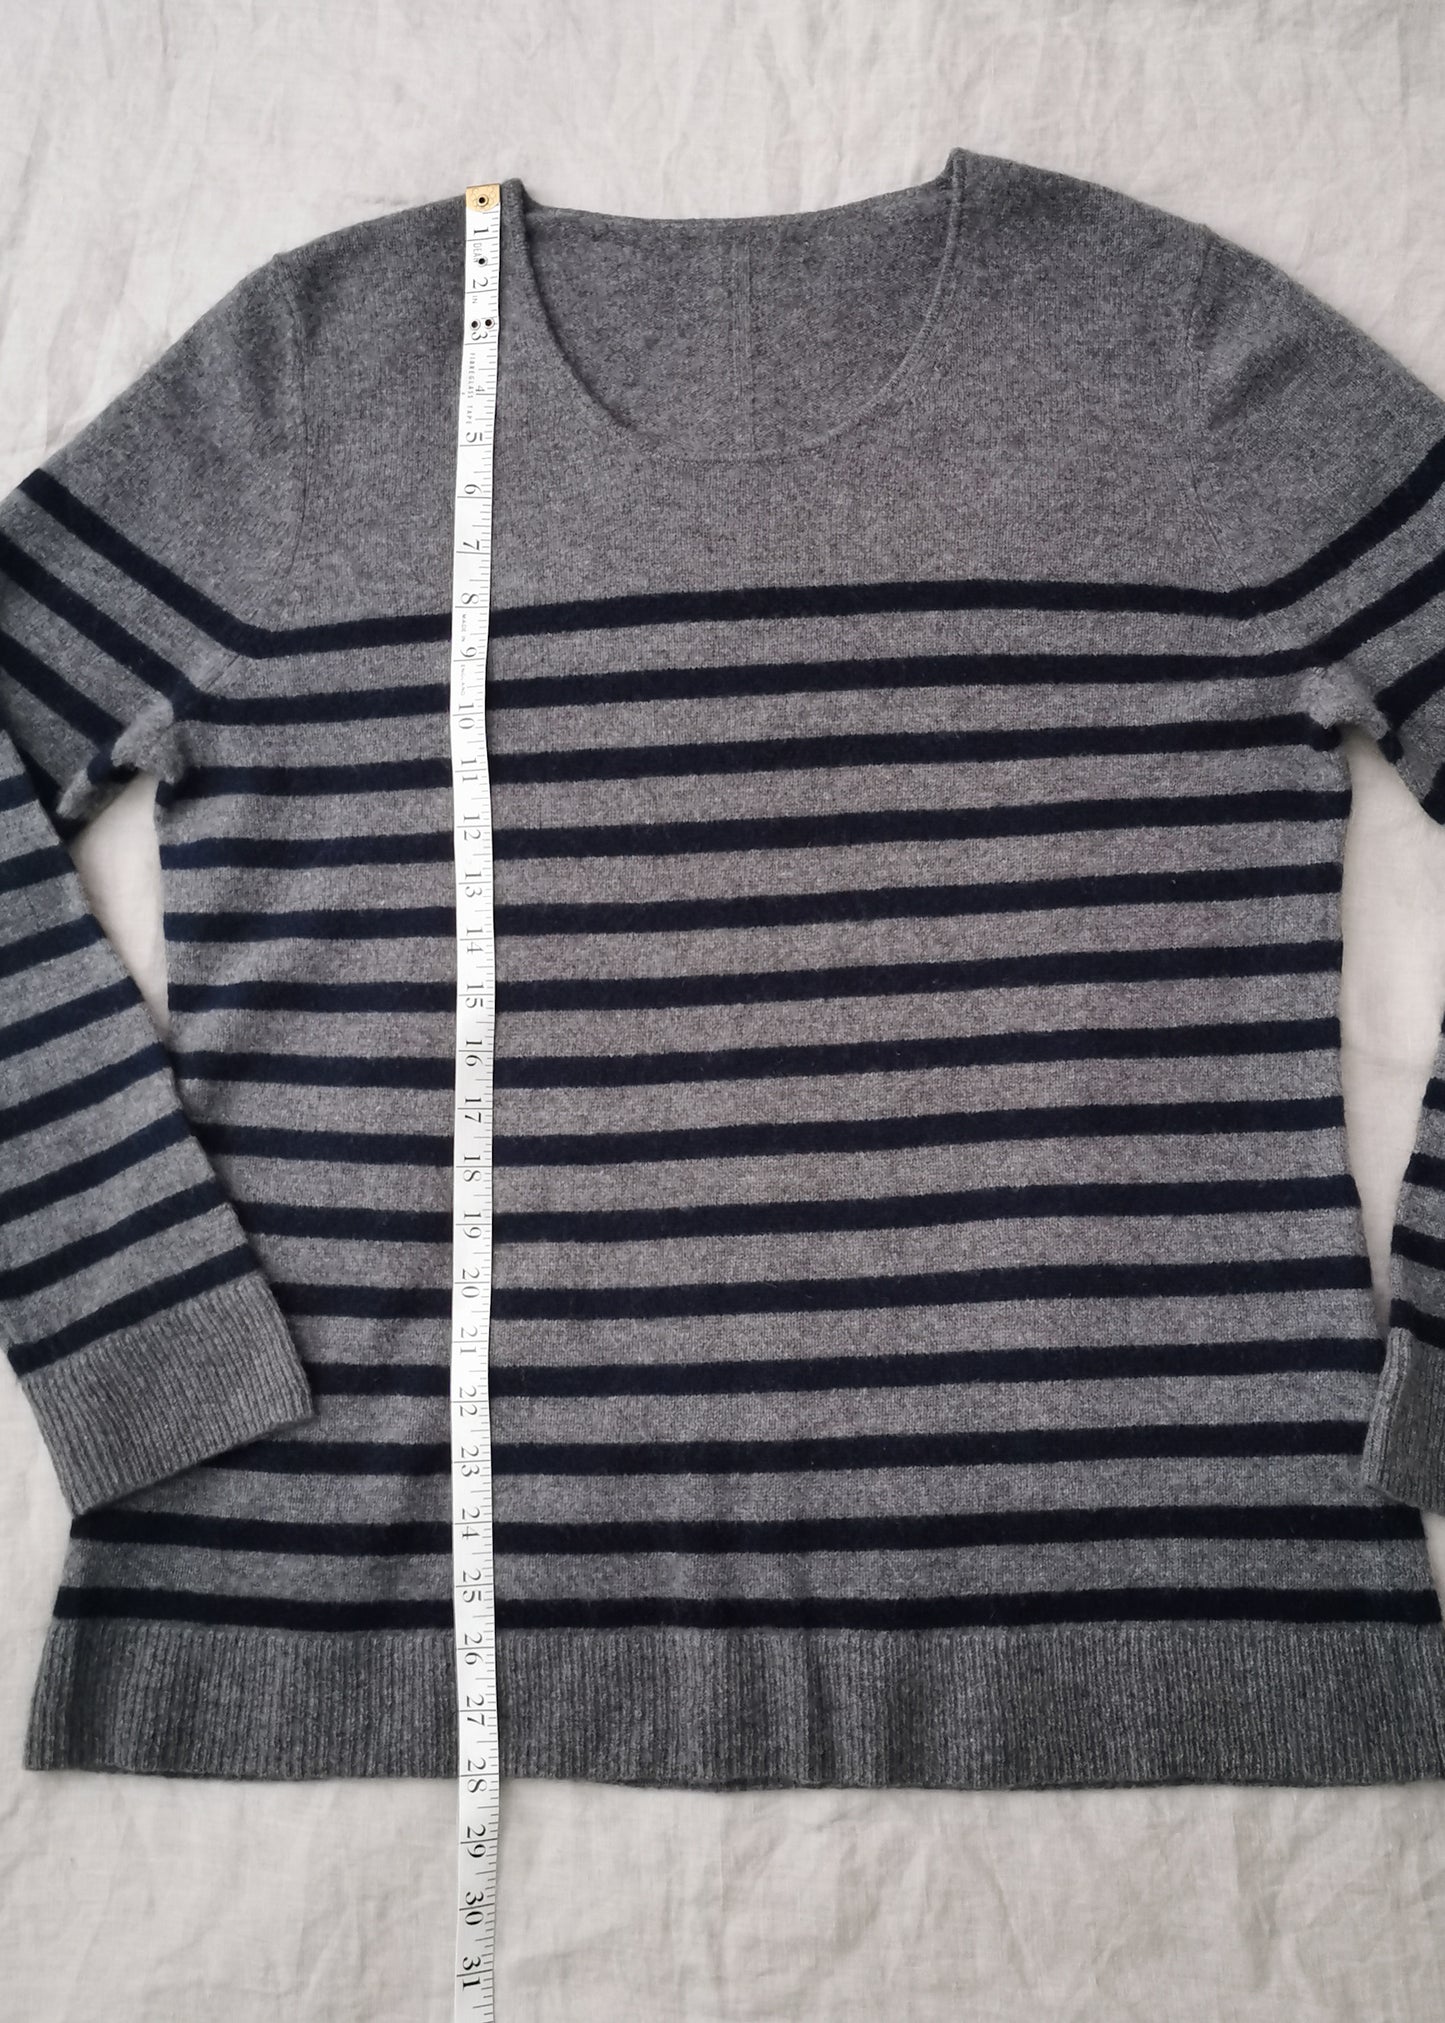 Cashmere Sweater (L)